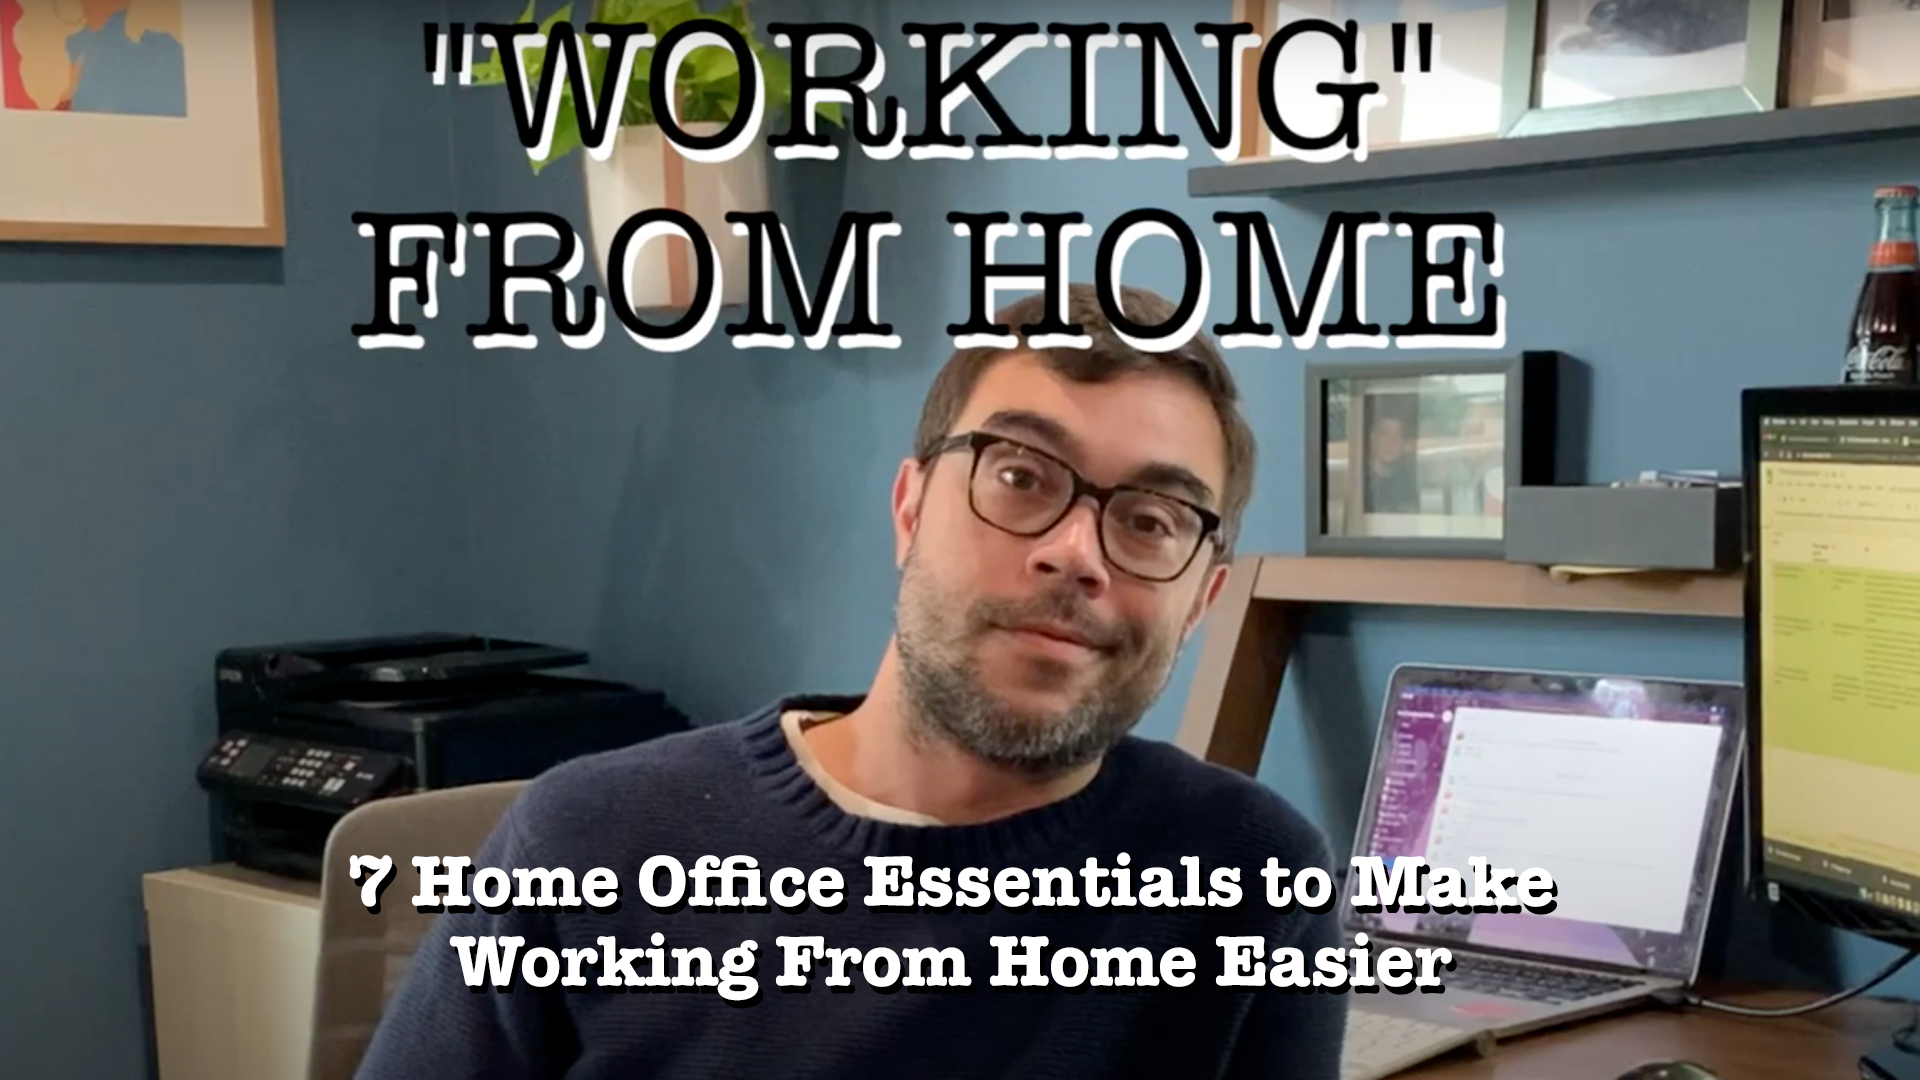 https://uworkfh.com/wp-content/uploads/2020/11/7-work-from-home-essentials.jpg